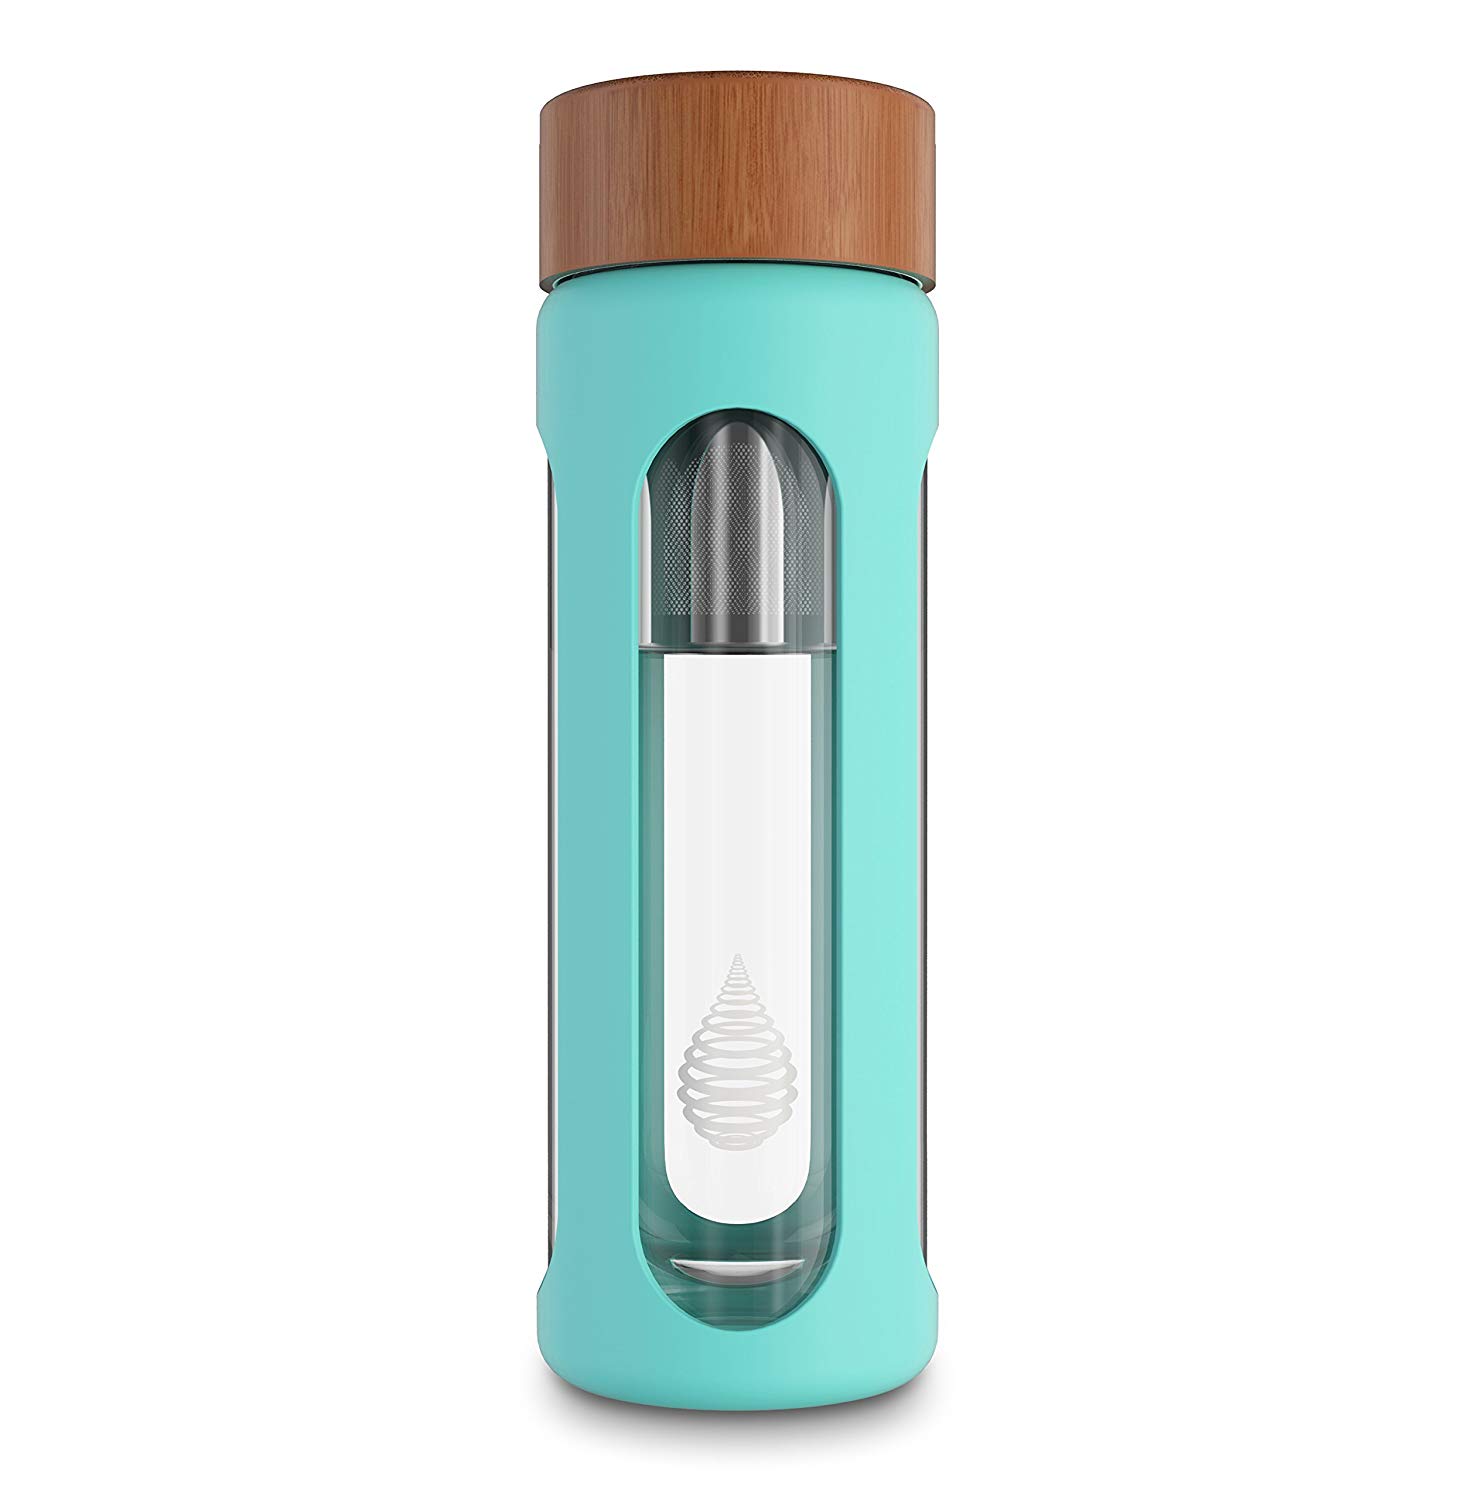 pH HYDRATE Glass Alkaline Water Bottle - Portable Alkaline Water Filter Ionizer - Water bottle with Filter